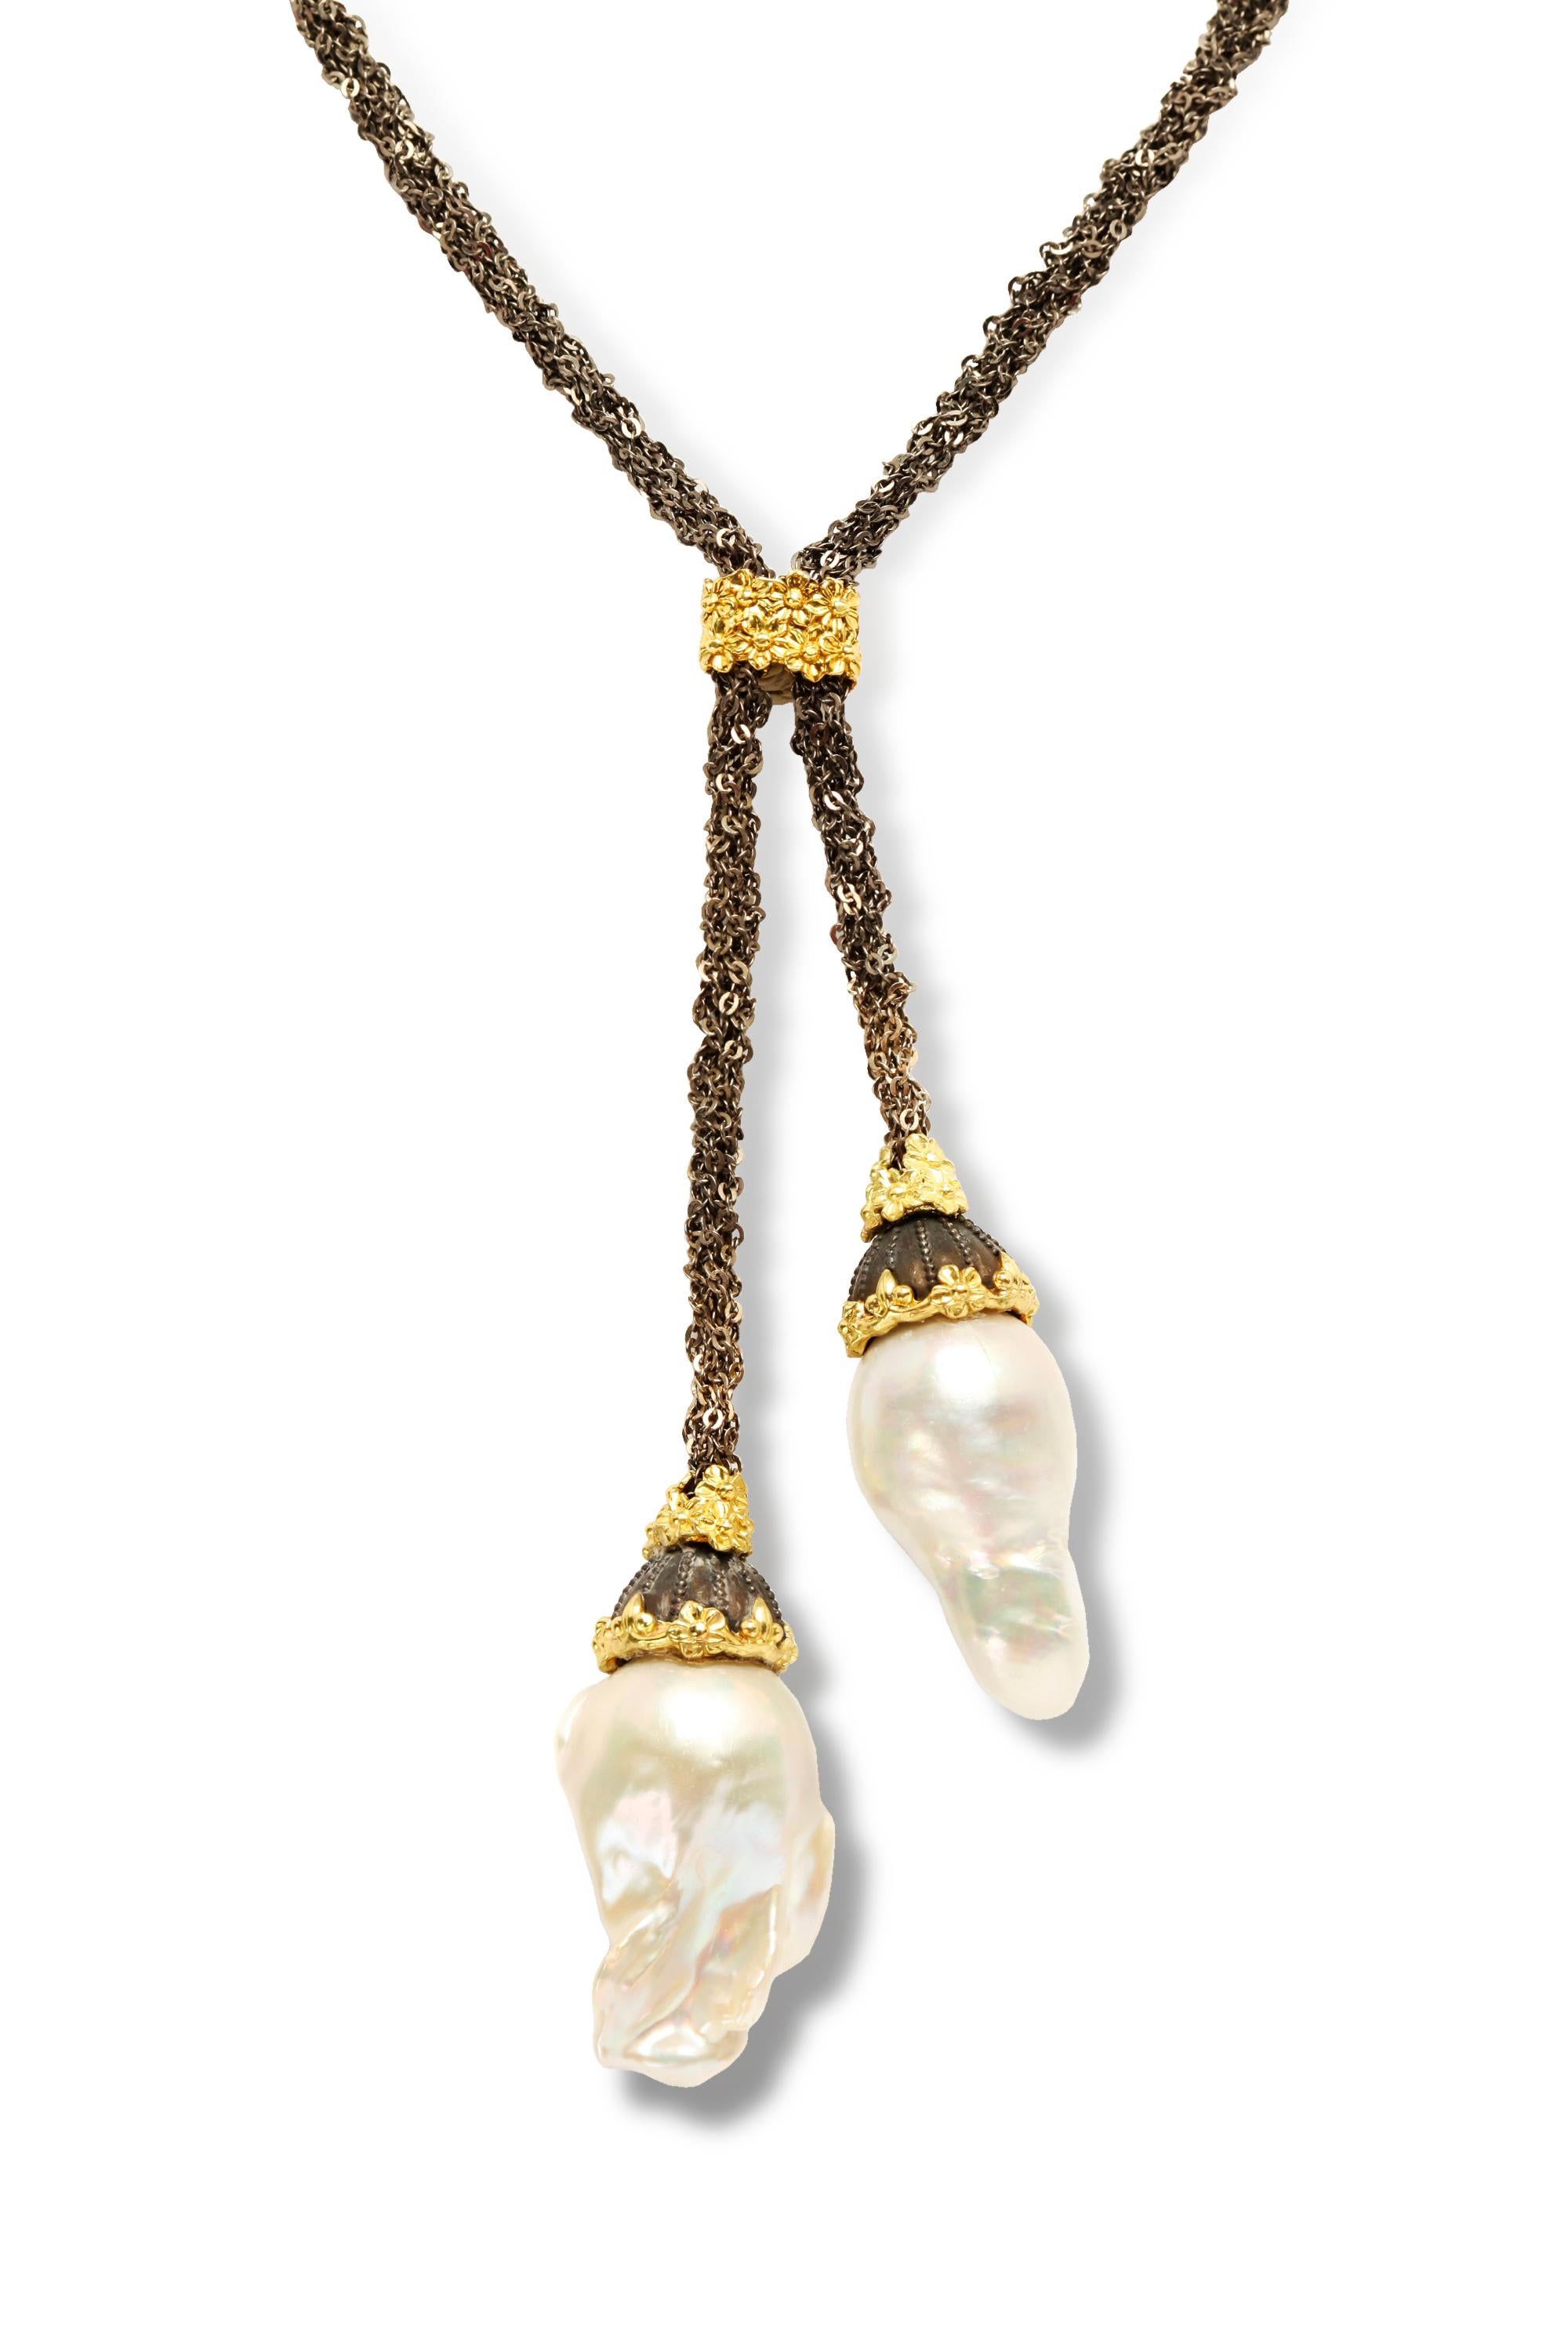 Gealterte Silberkette aus Mesh von Stambolian  18 Karat Gold Barock Perlentropfen Tropfen Lariat Halskette 

Diese einzigartige Halskette besteht aus einer wunderschönen Netzkette, die in der Mitte durch ein goldenes Blumendesign verbunden ist.

Das